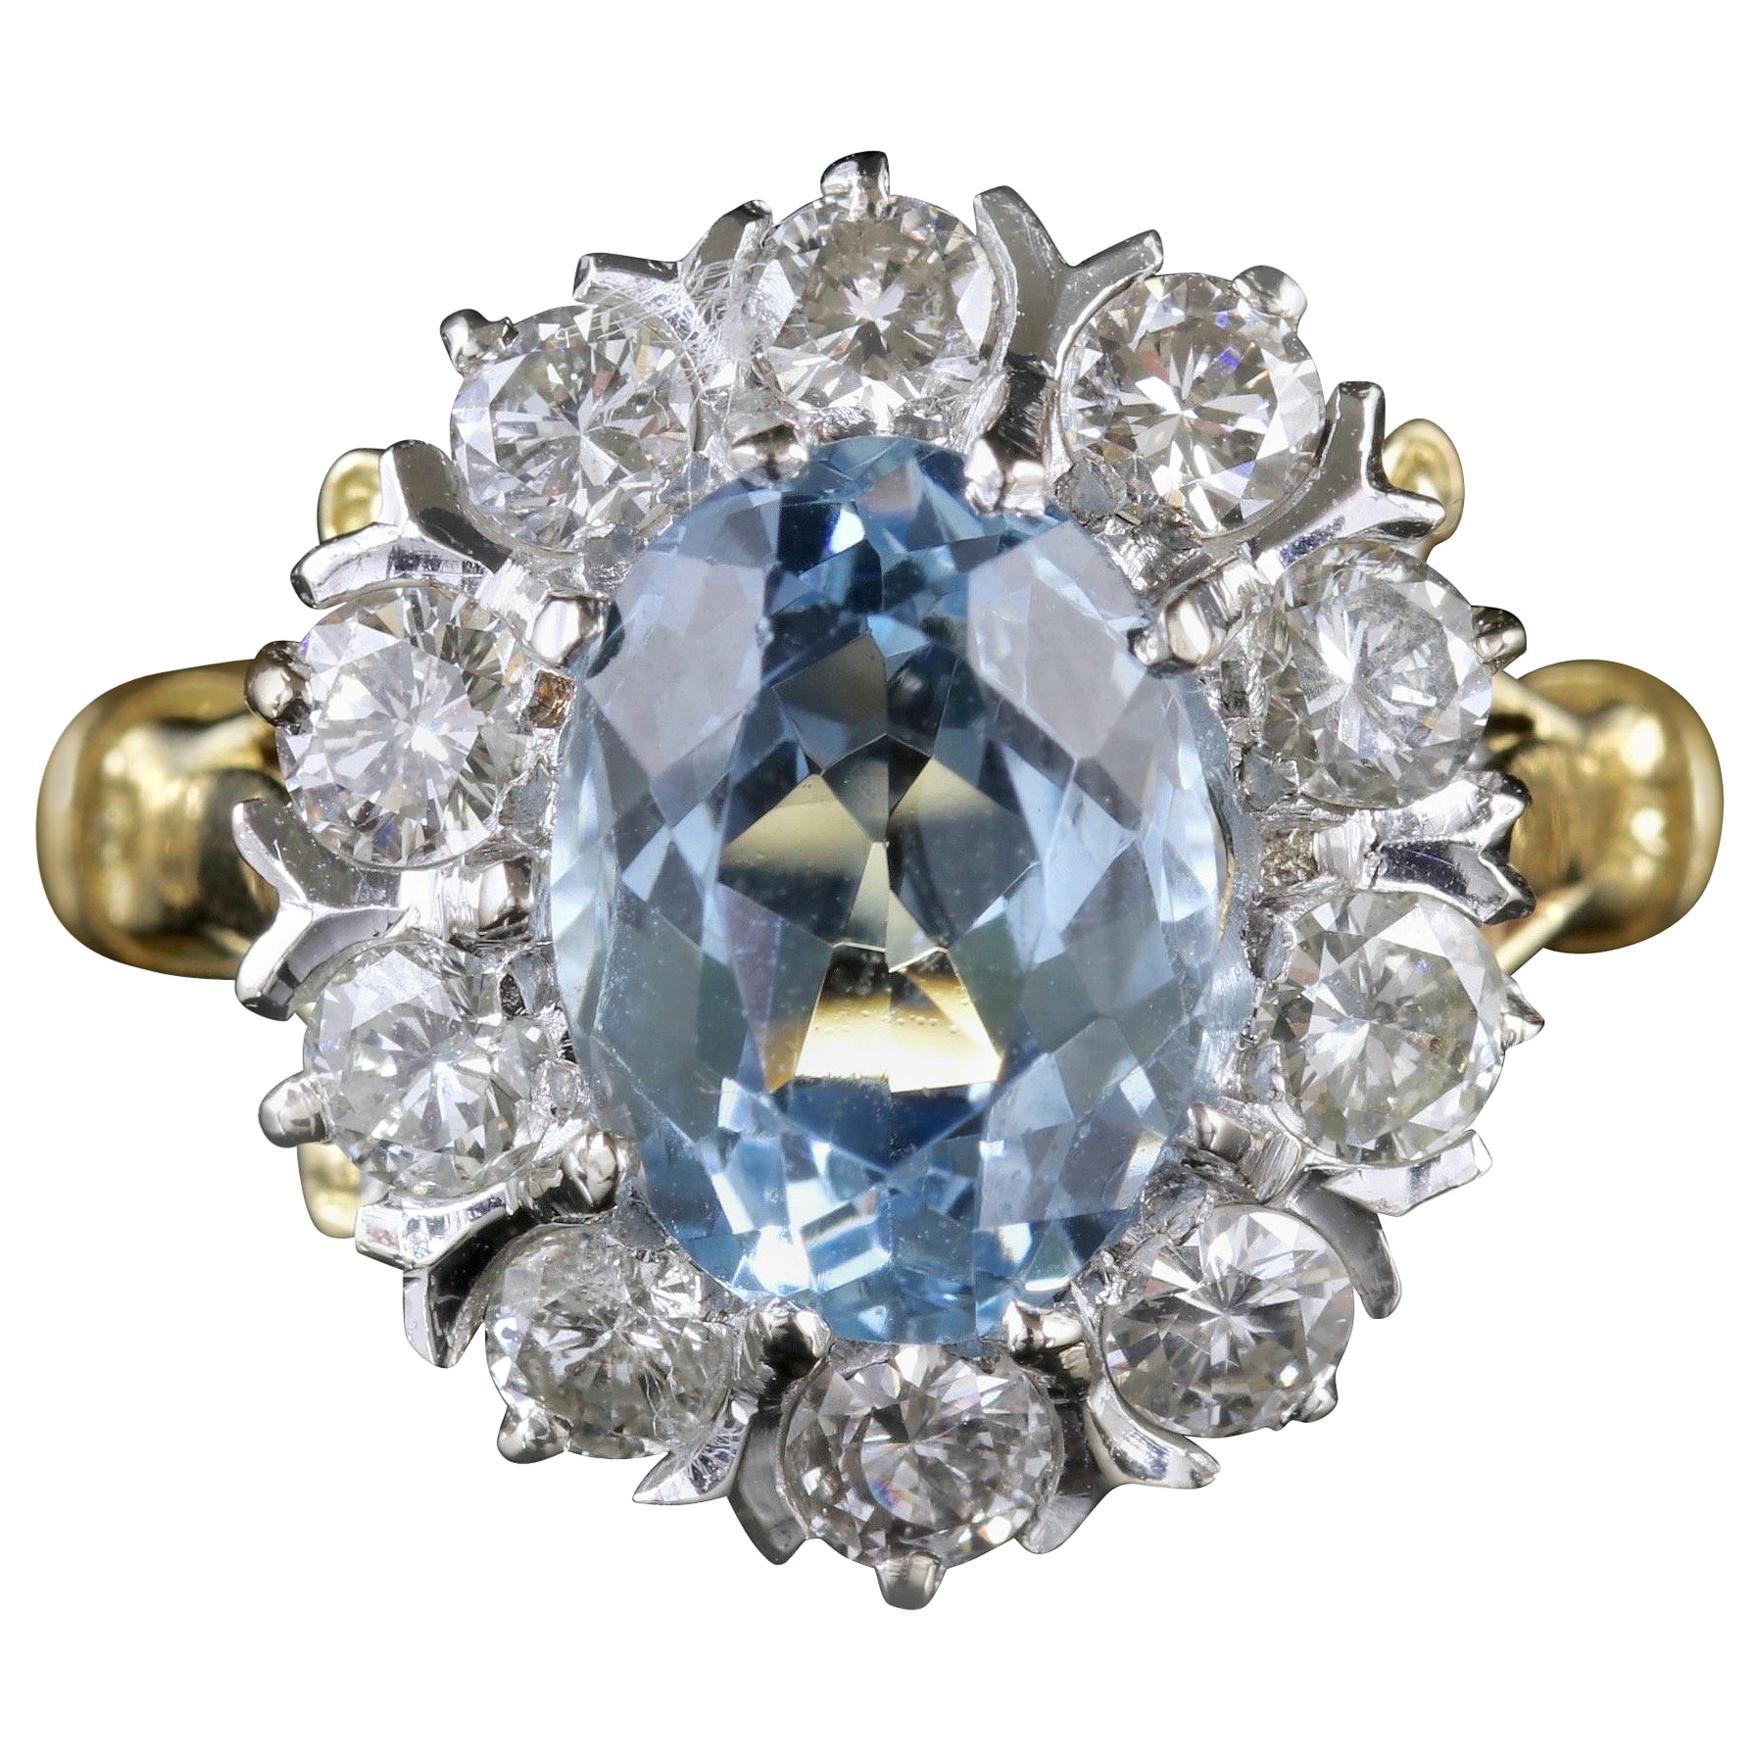 Antique Victorian Aquamarine Cluster Ring Diamond 18 Carat Gold, circa 1900